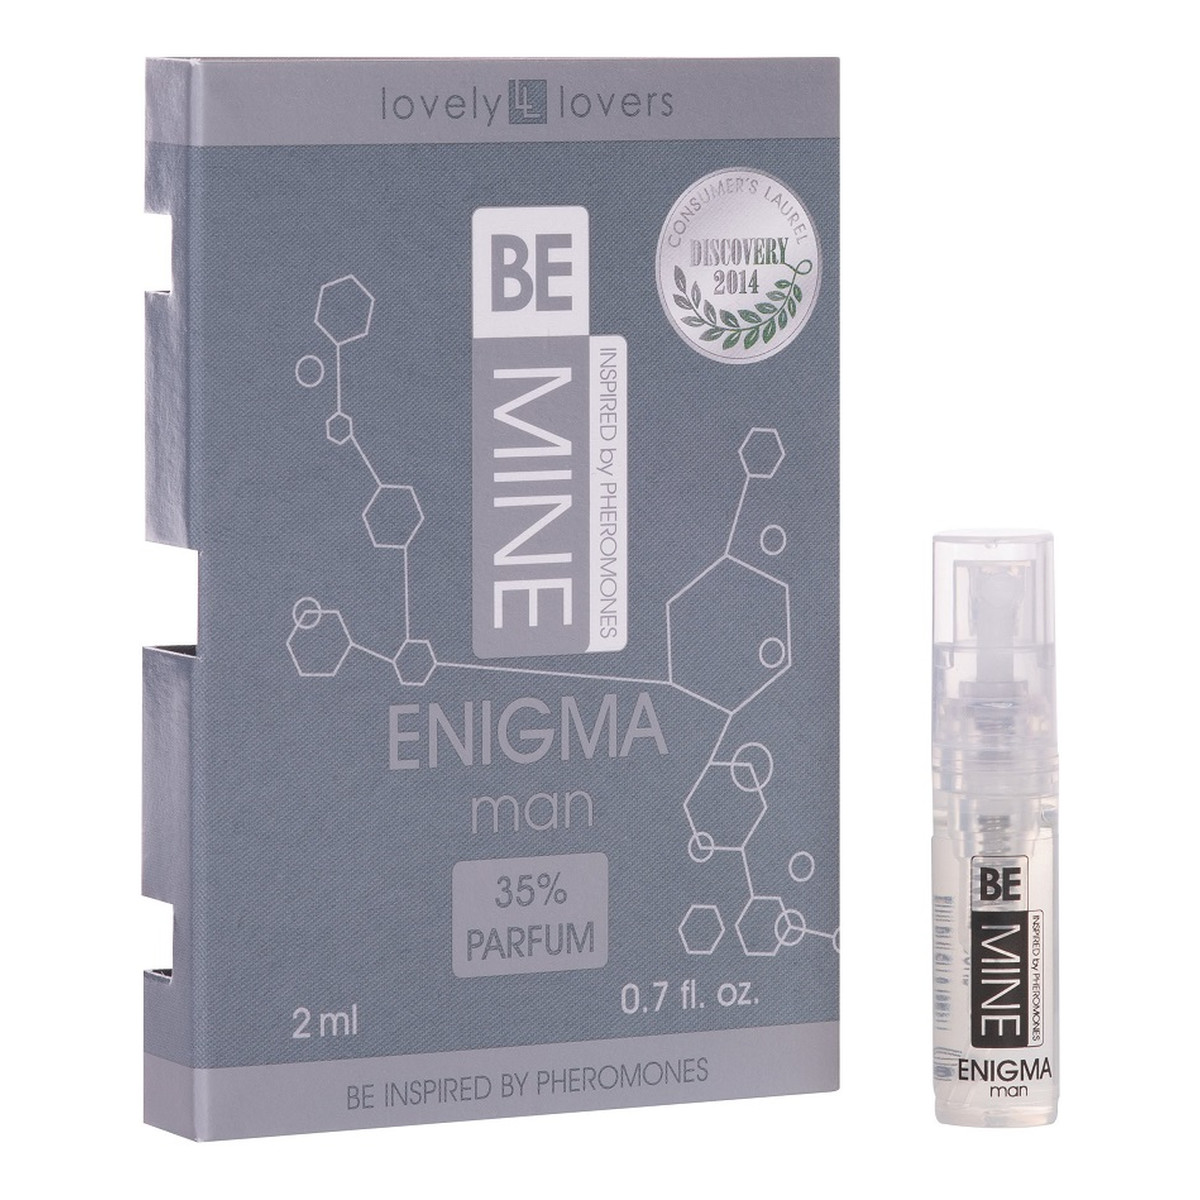 Lovely Lovers BeMine Enigma Man Perfumy z feromonami zapachowymi spray 2ml